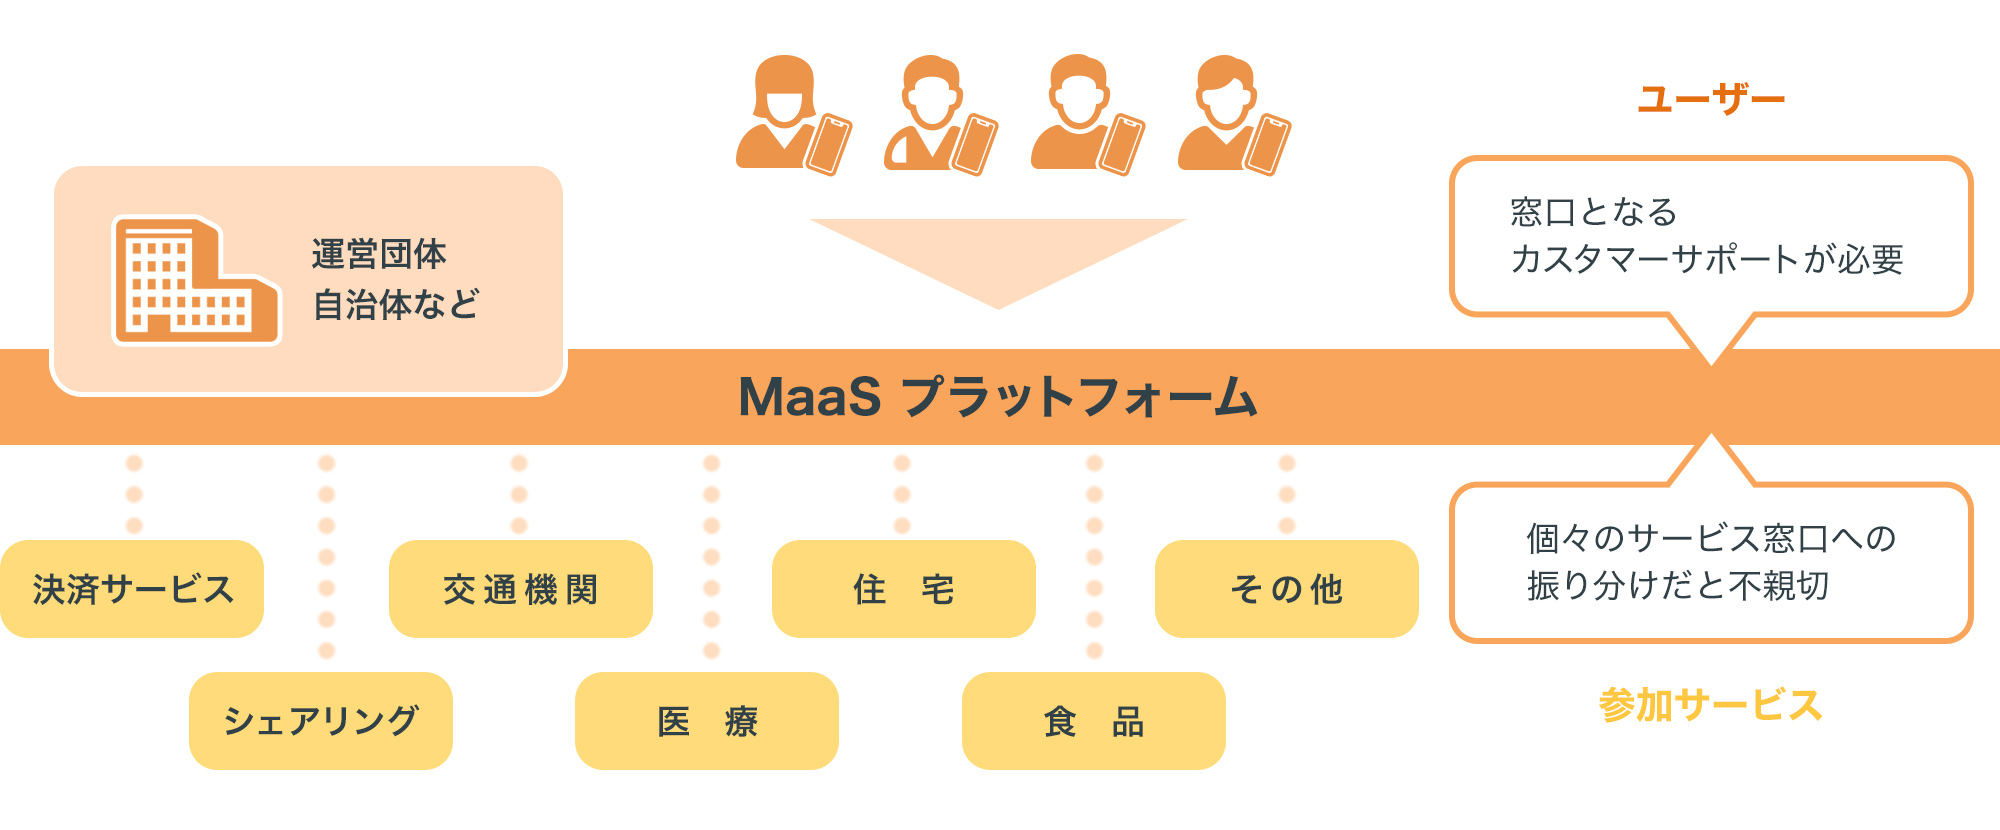 小田急電鉄が開発したMaaSアプリEMot